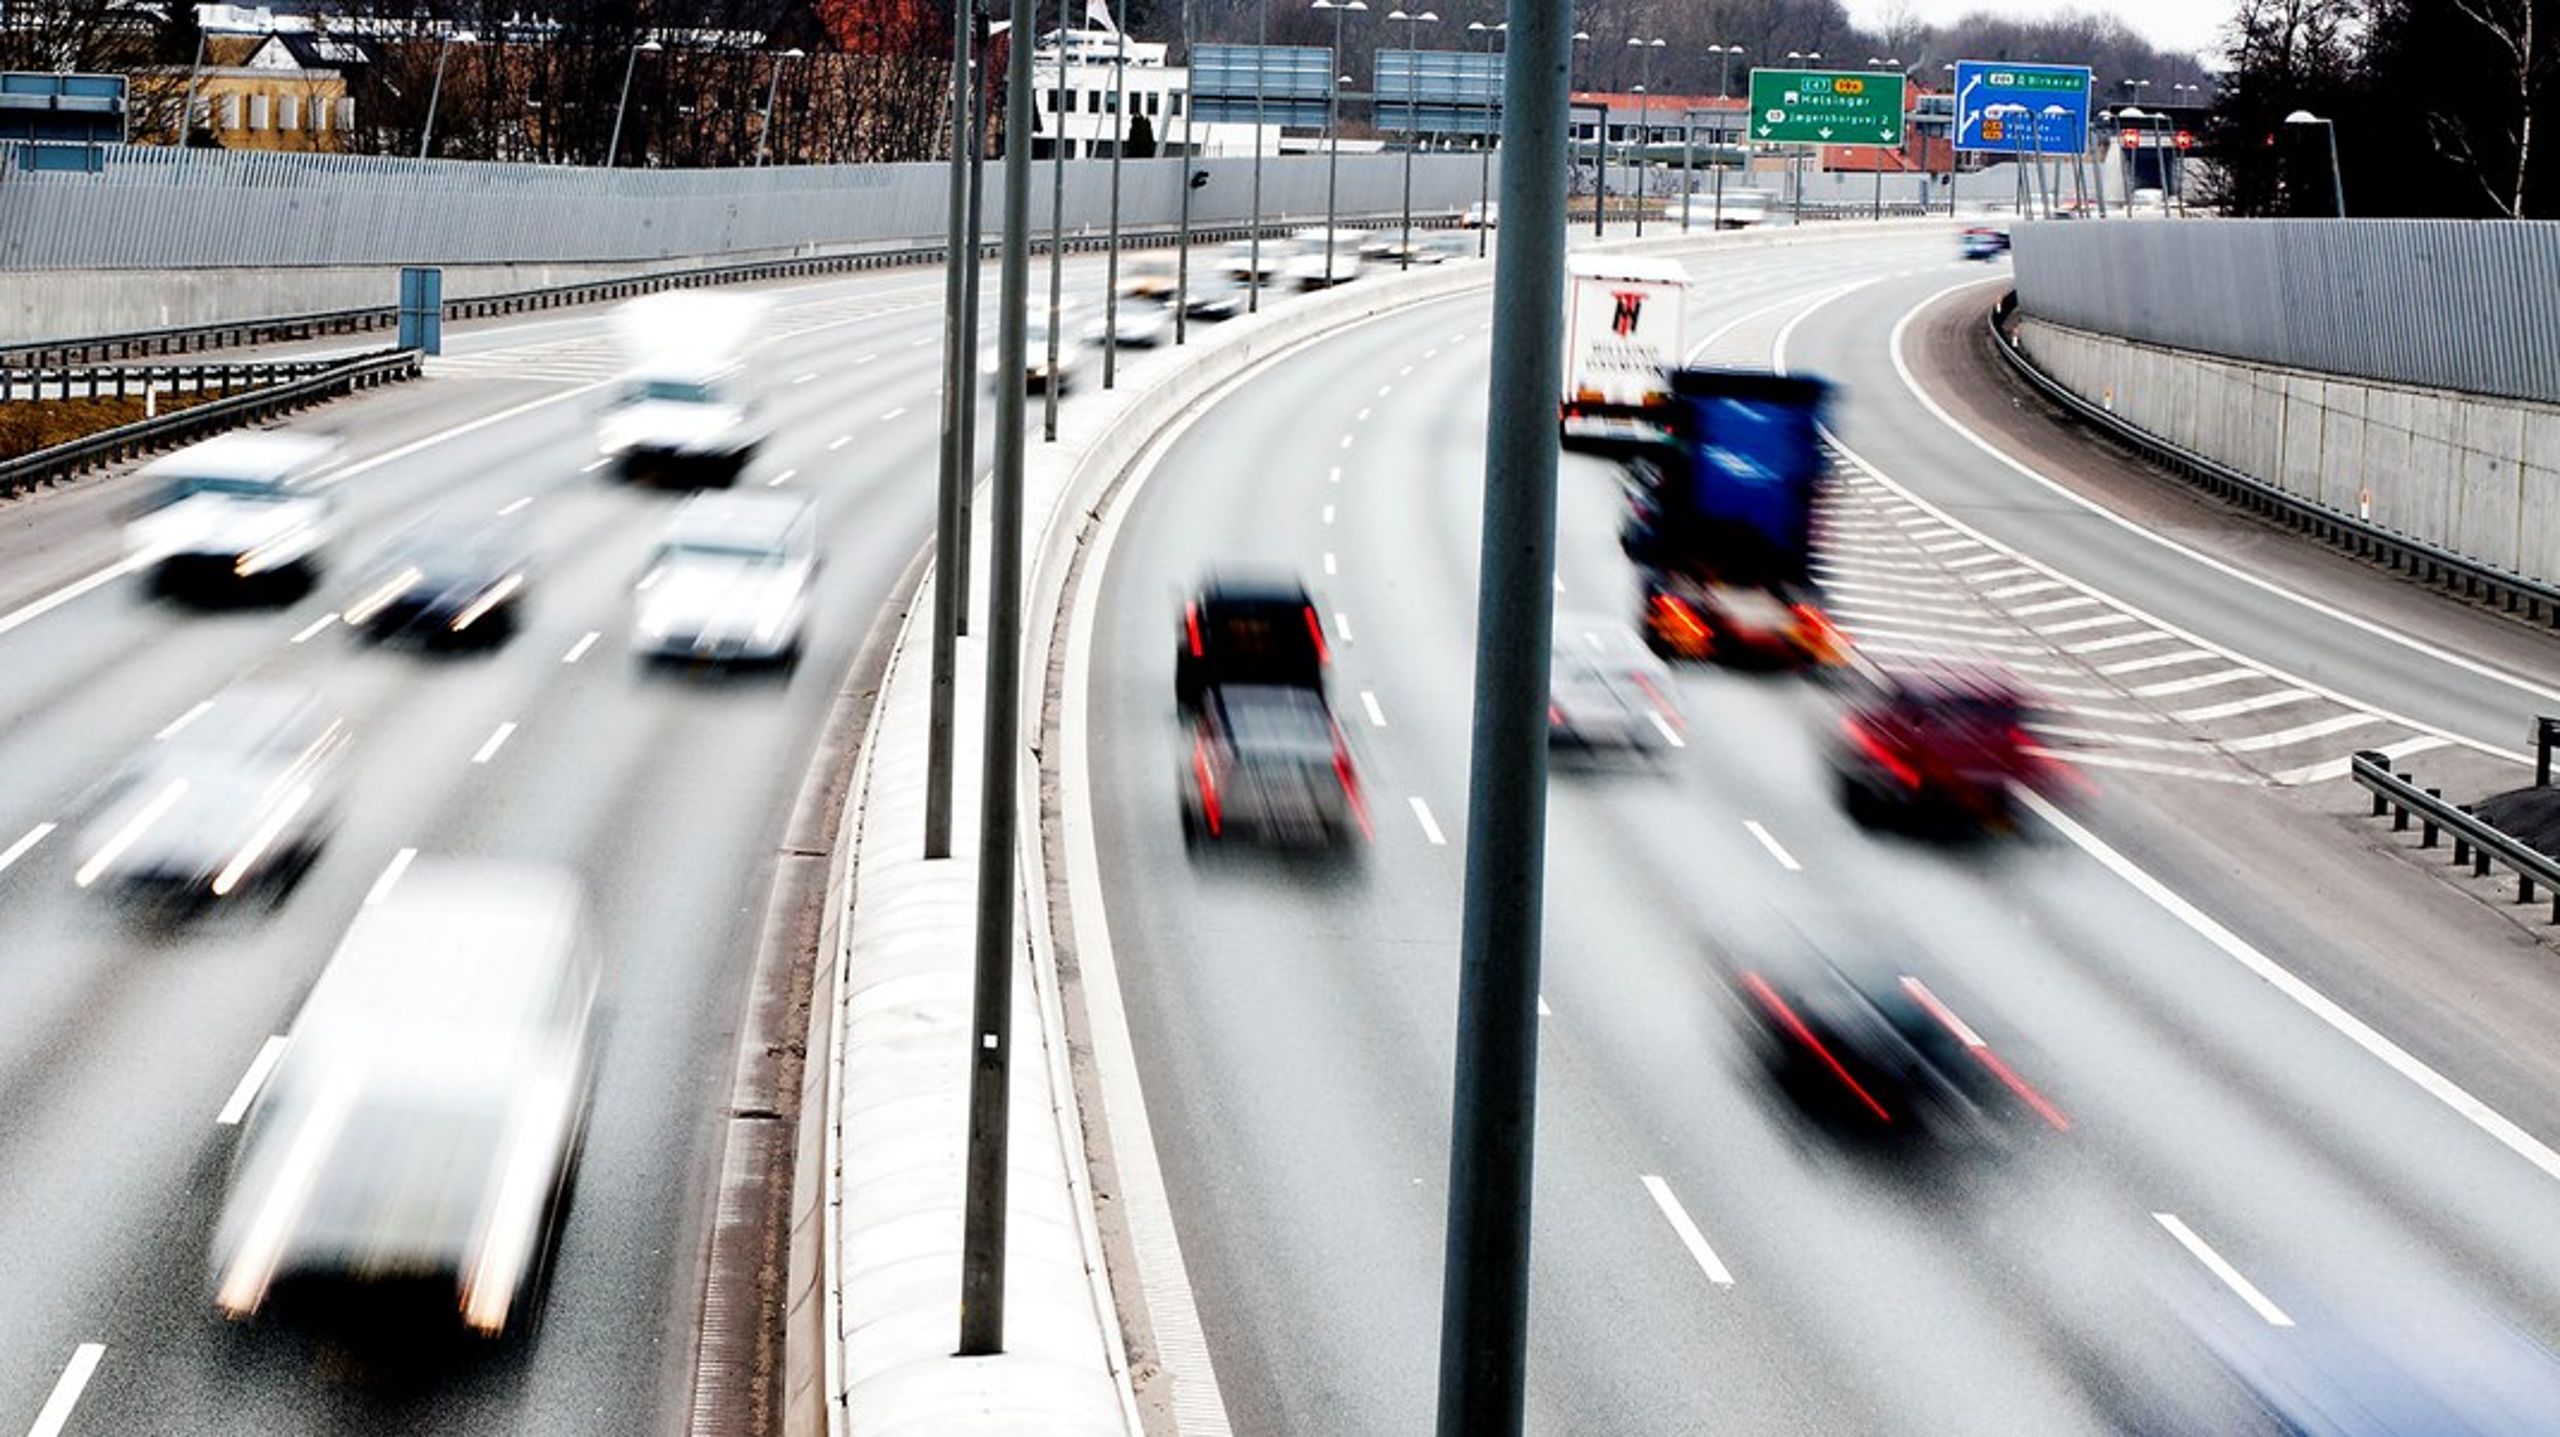 En måde at komme støjgenerne til livs kunne være at sænke hastigheden til 90 km/t i de tættest befolkede områder, foreslår Brøndbys borgmester.